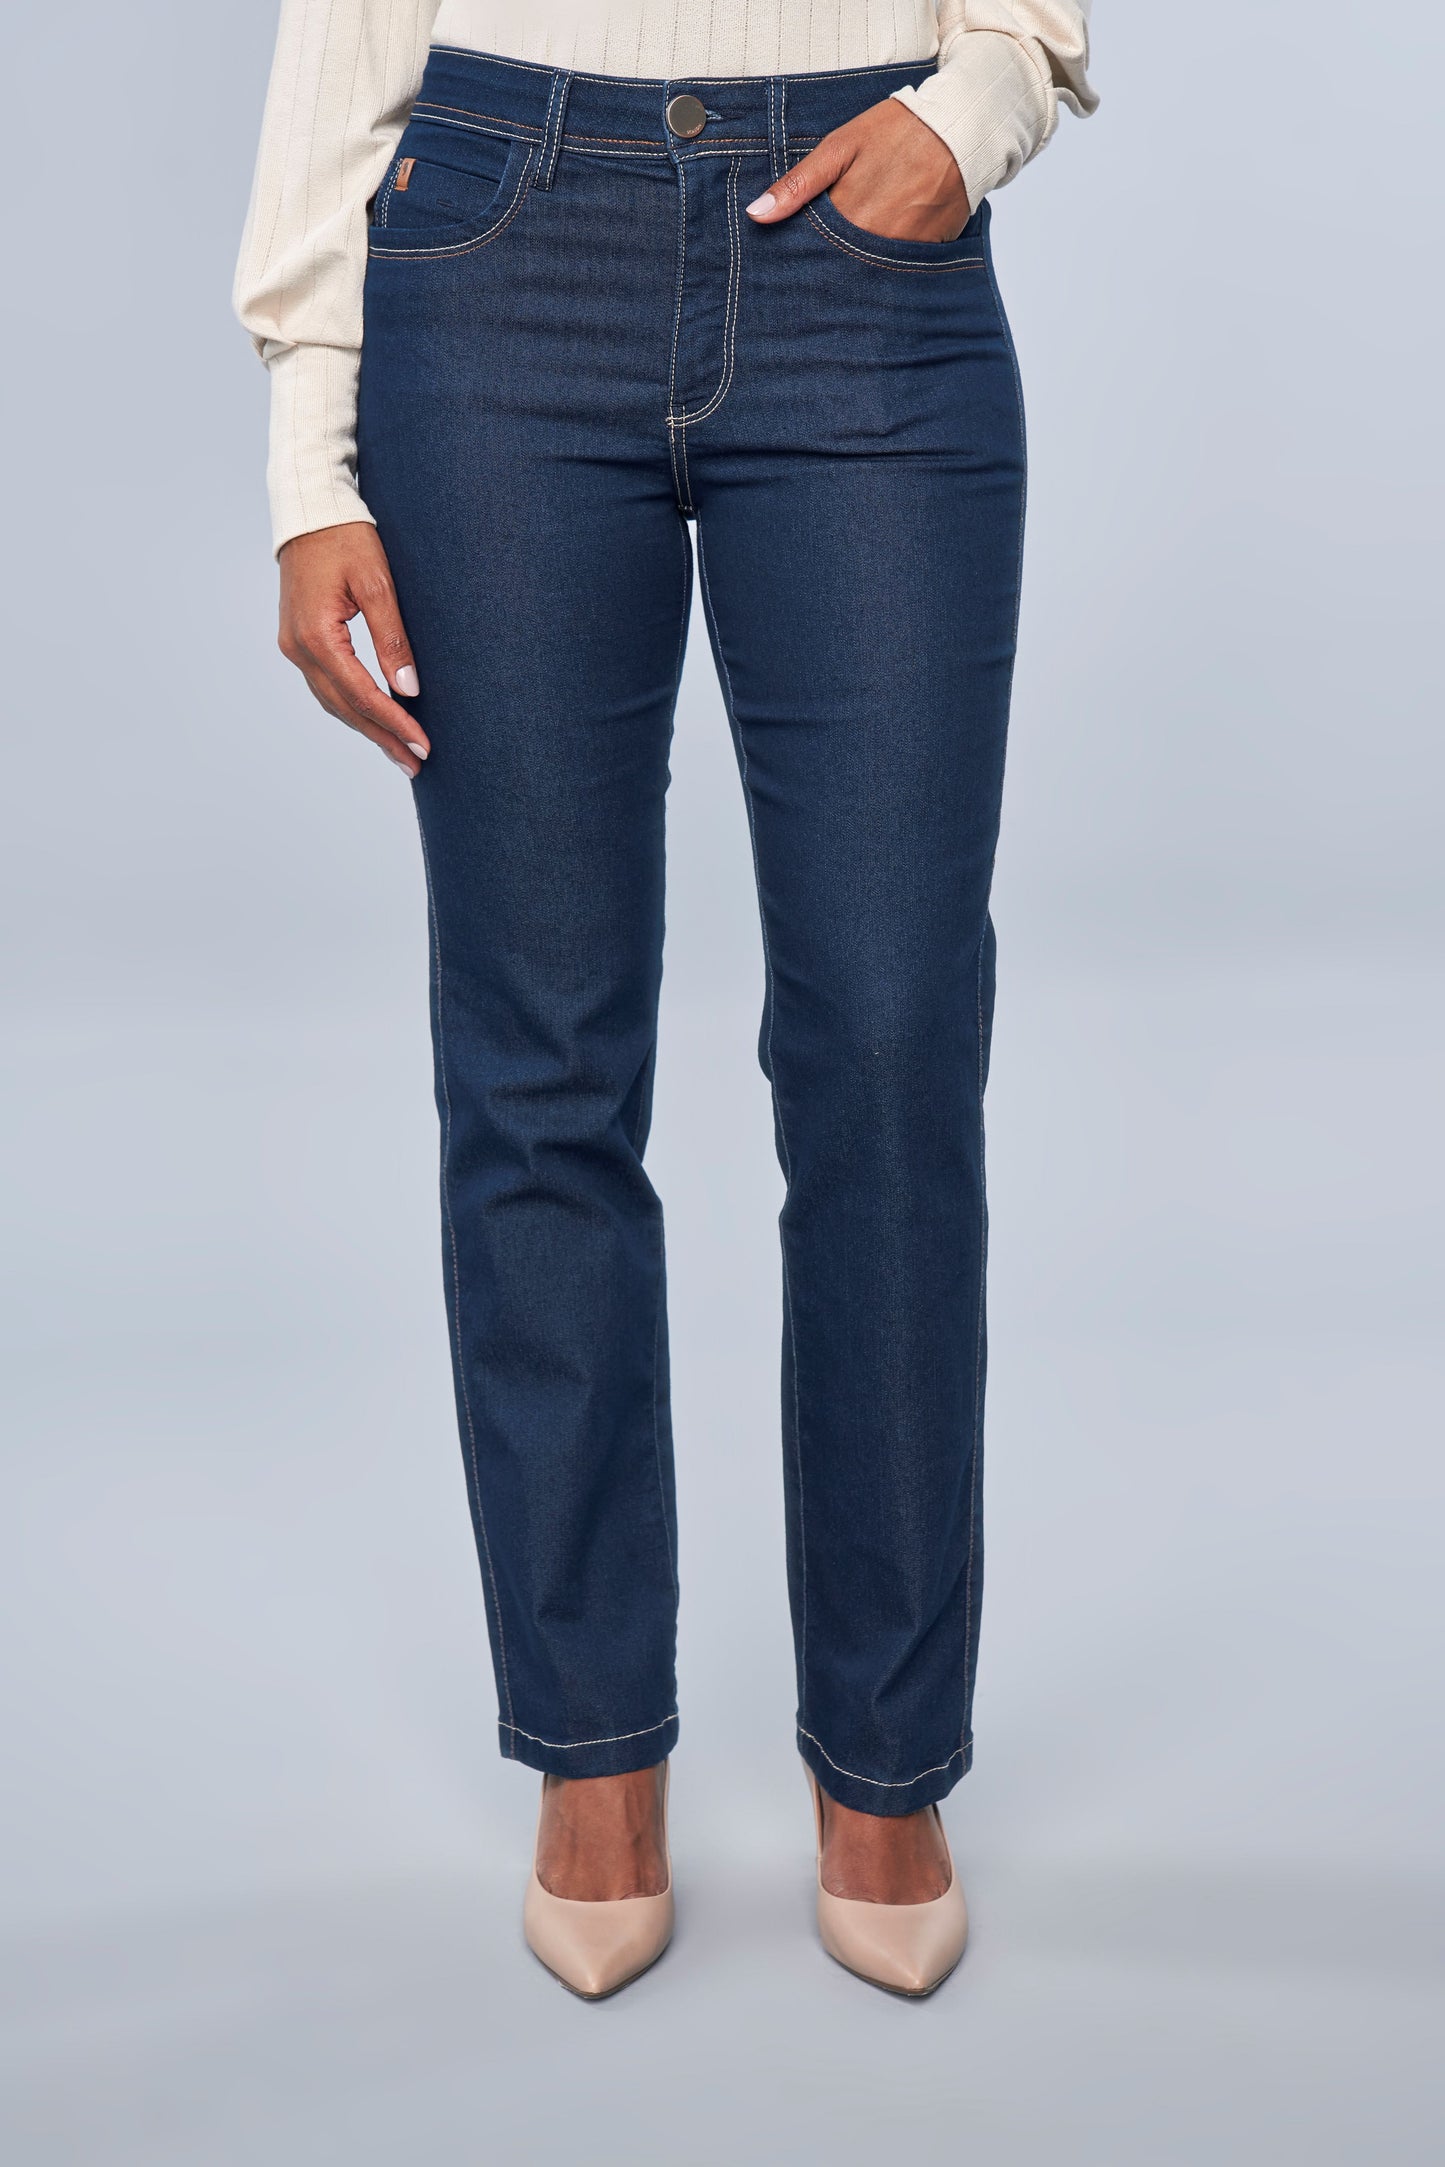 calça jeans reta cintura intermediária detalhe pespontos